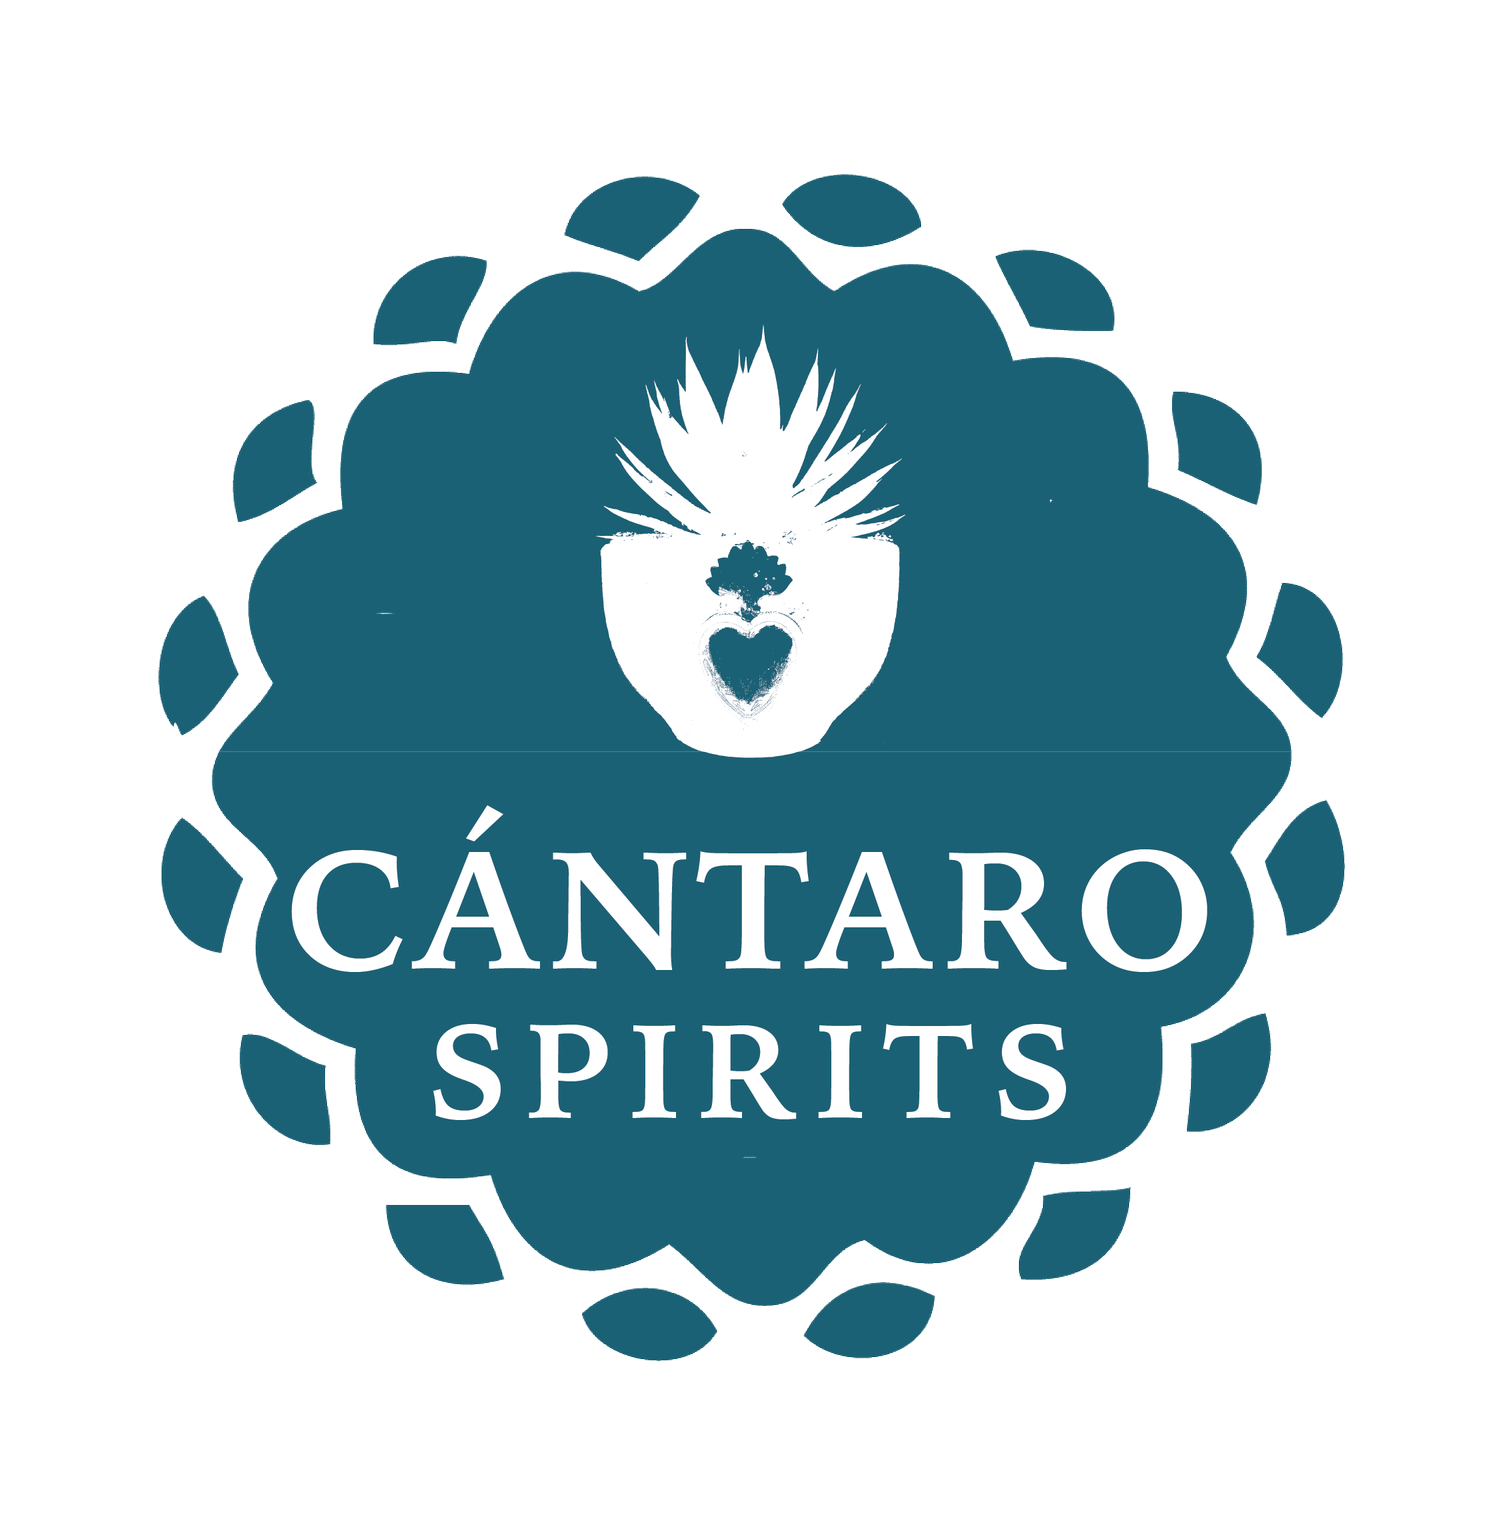 CÁNTARO SPIRITS